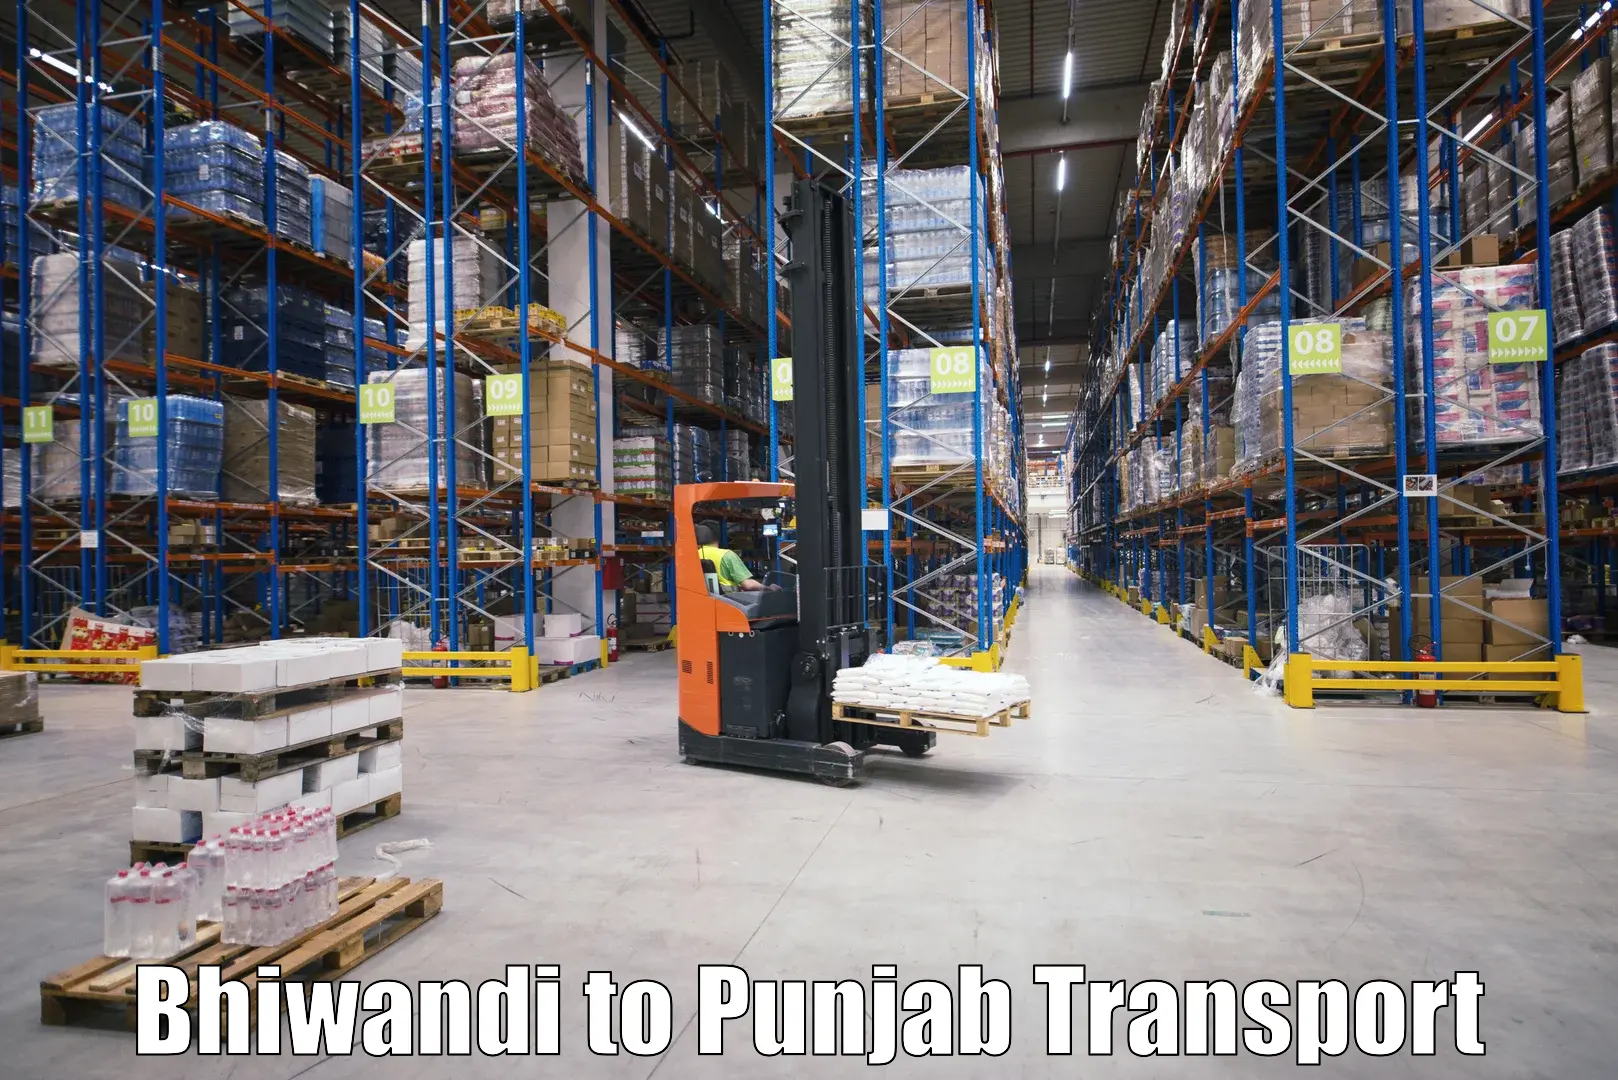 Furniture transport service Bhiwandi to Punjab